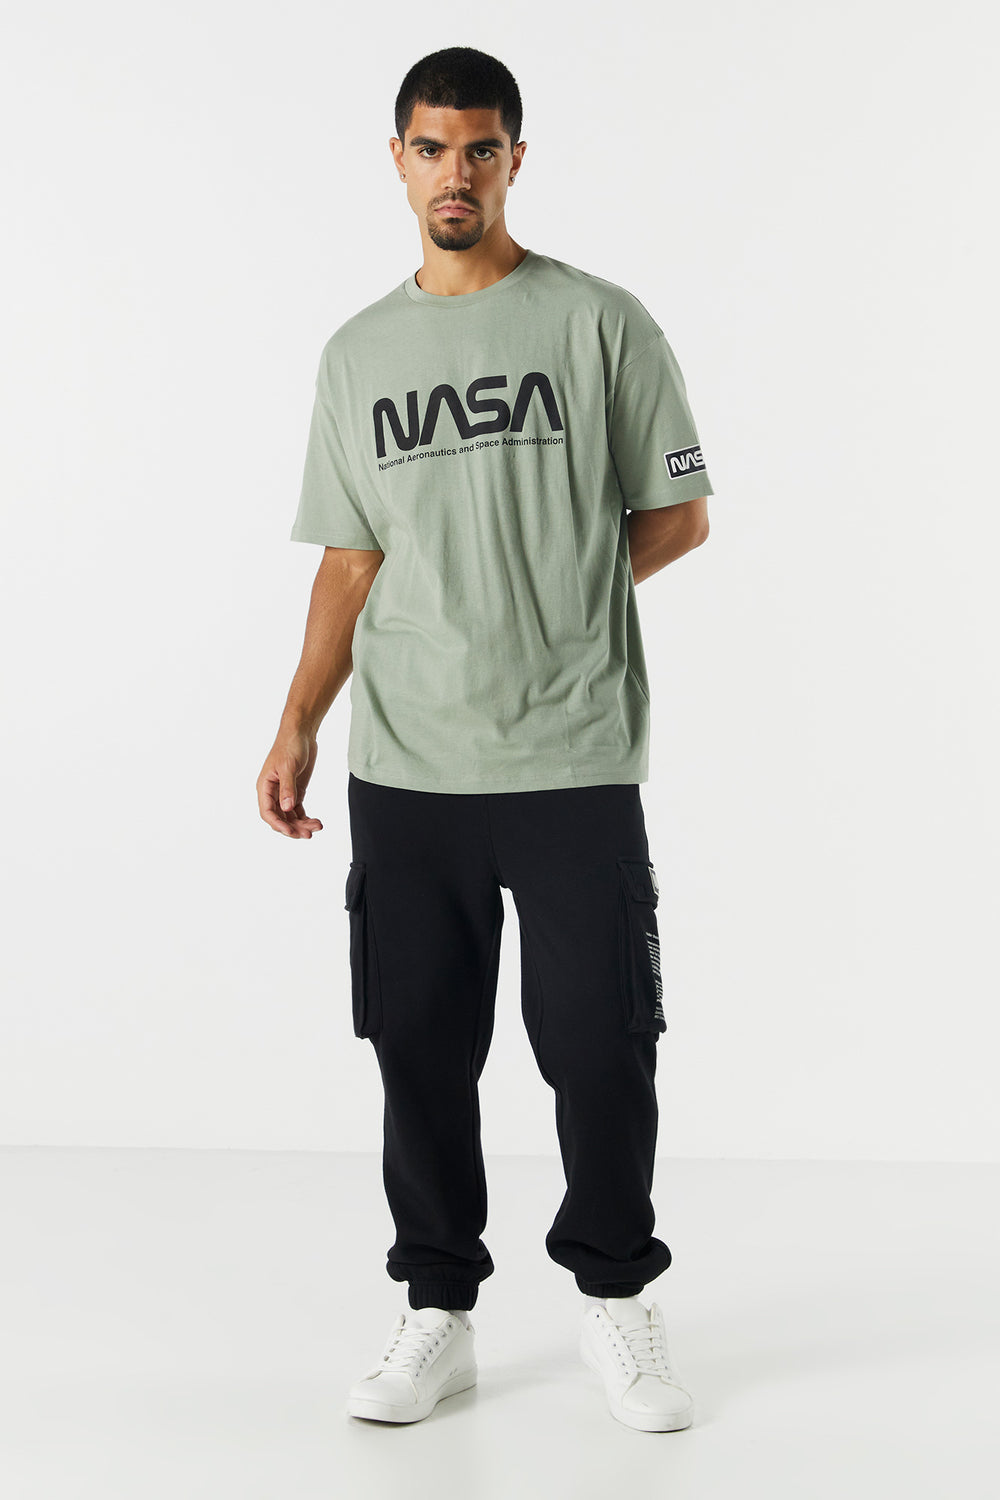 NASA Graphic T-Shirt NASA Graphic T-Shirt 3